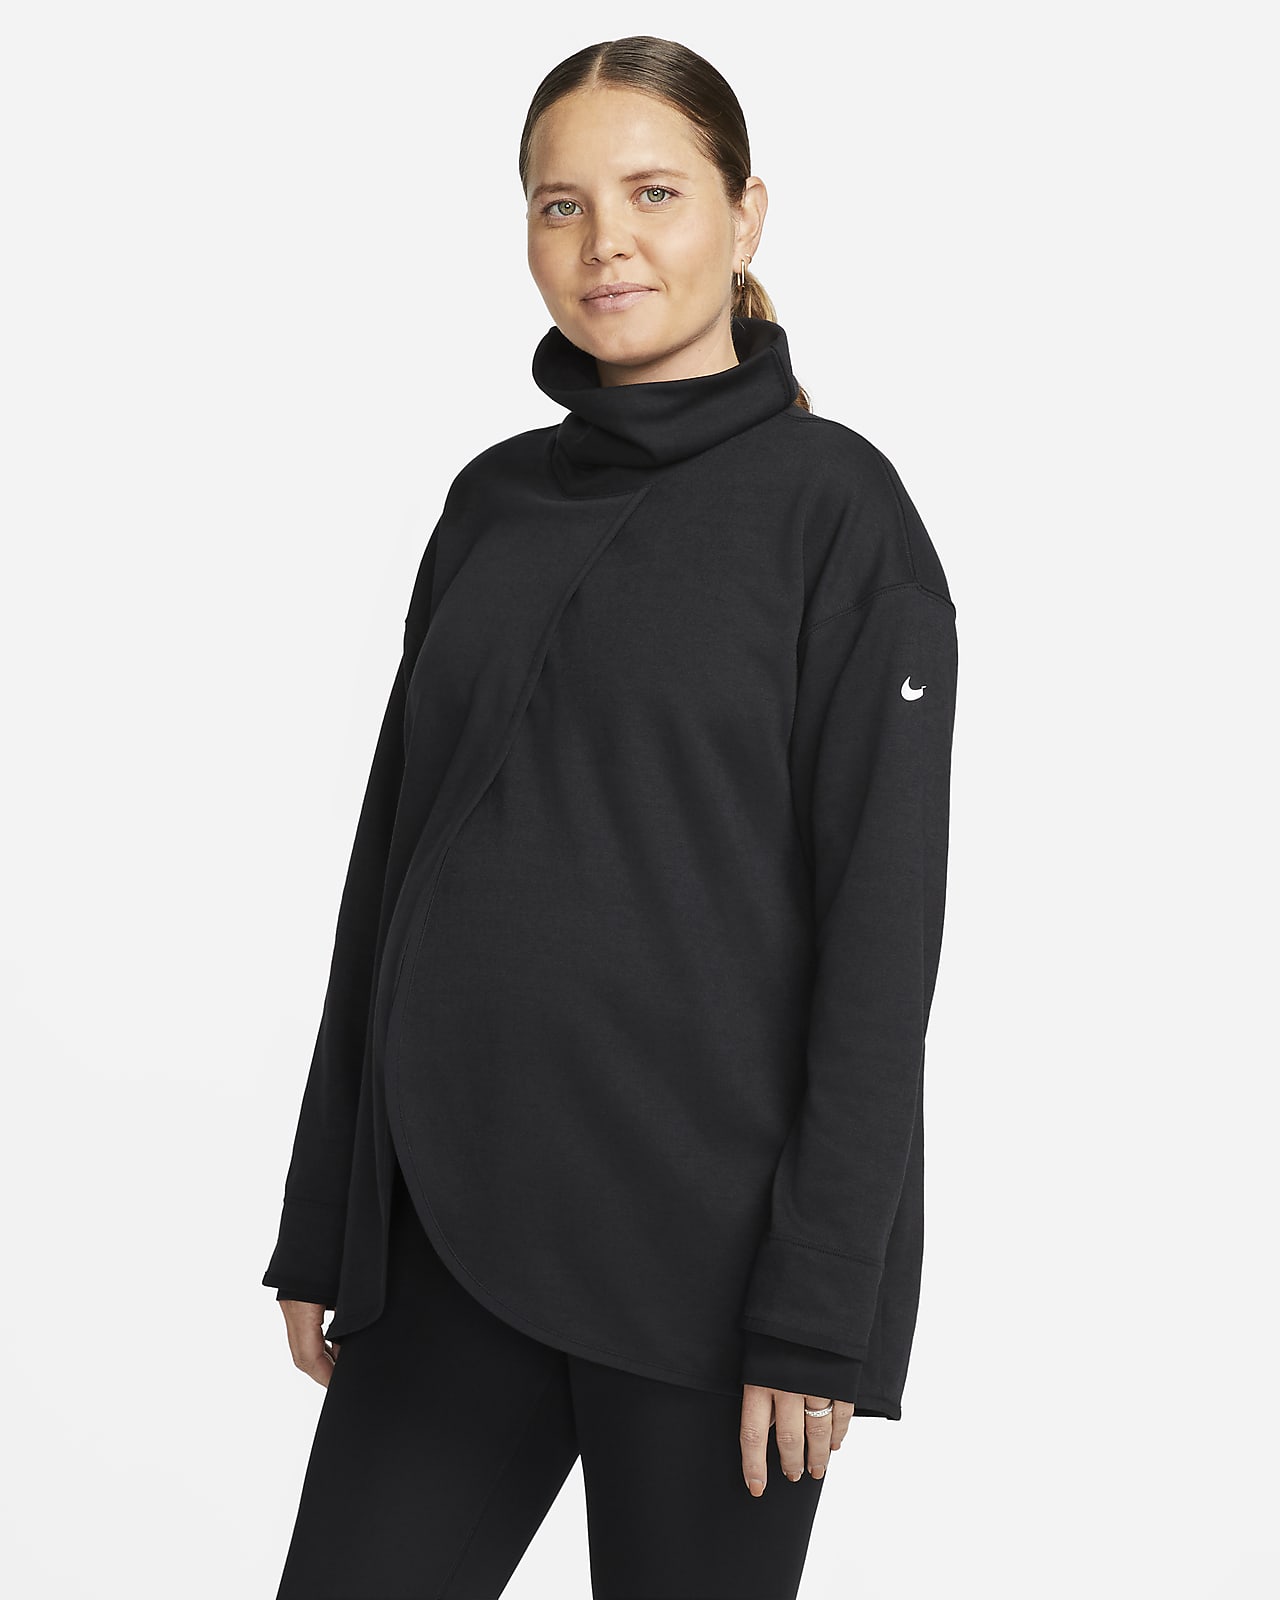 Γυναικείο φούτερ διπλής όψης Nike (M) (μητρότητας)